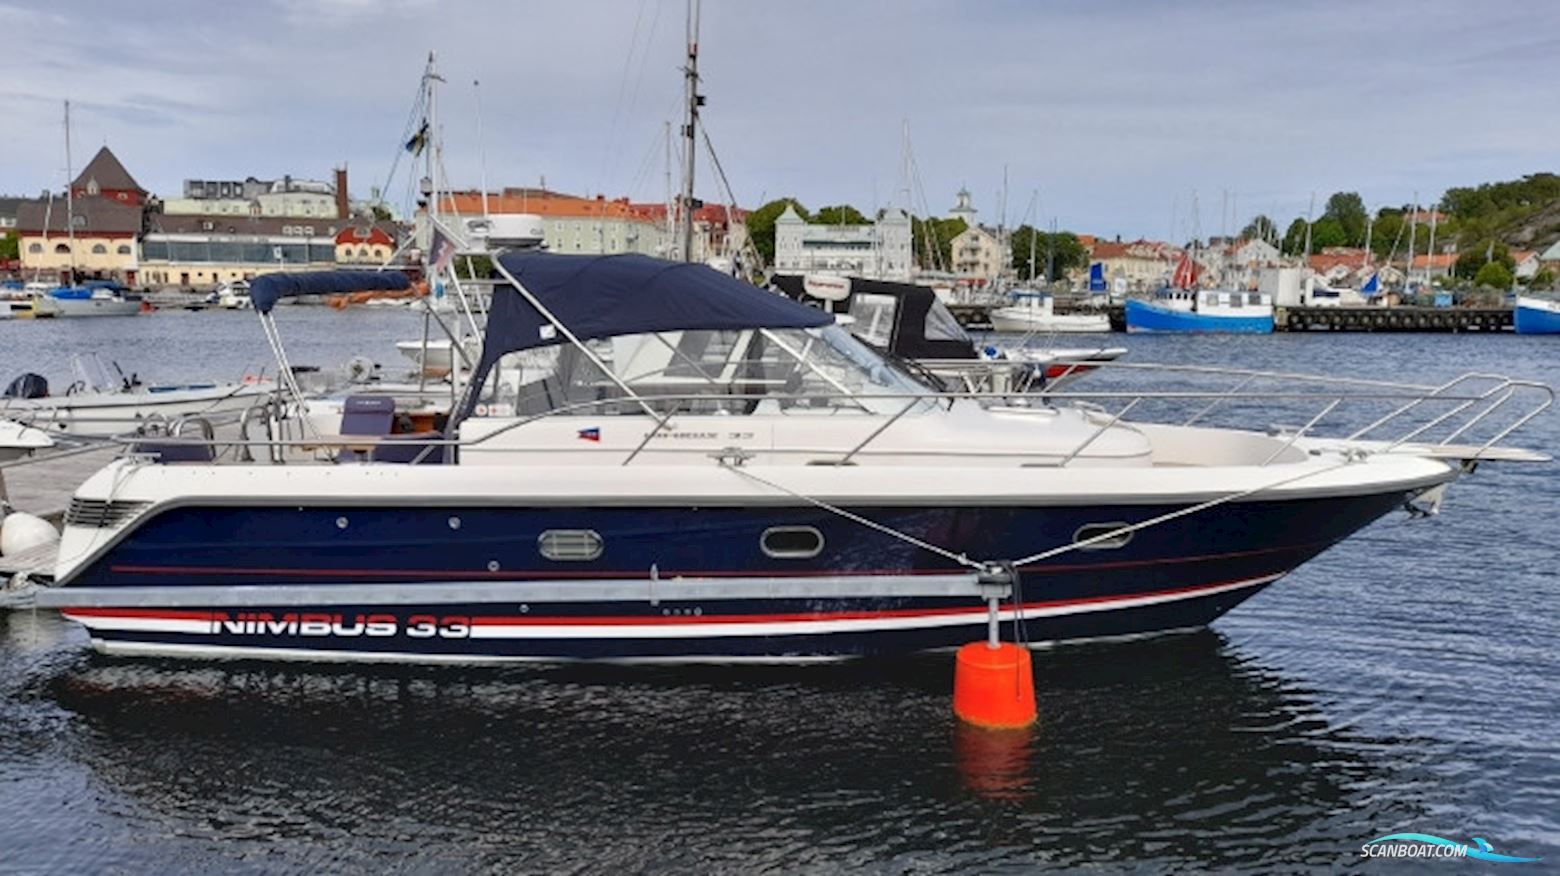 Nimbus 33 Nova Motorbåt 2001, med Volvo Penta Kad 44 motor, Sverige